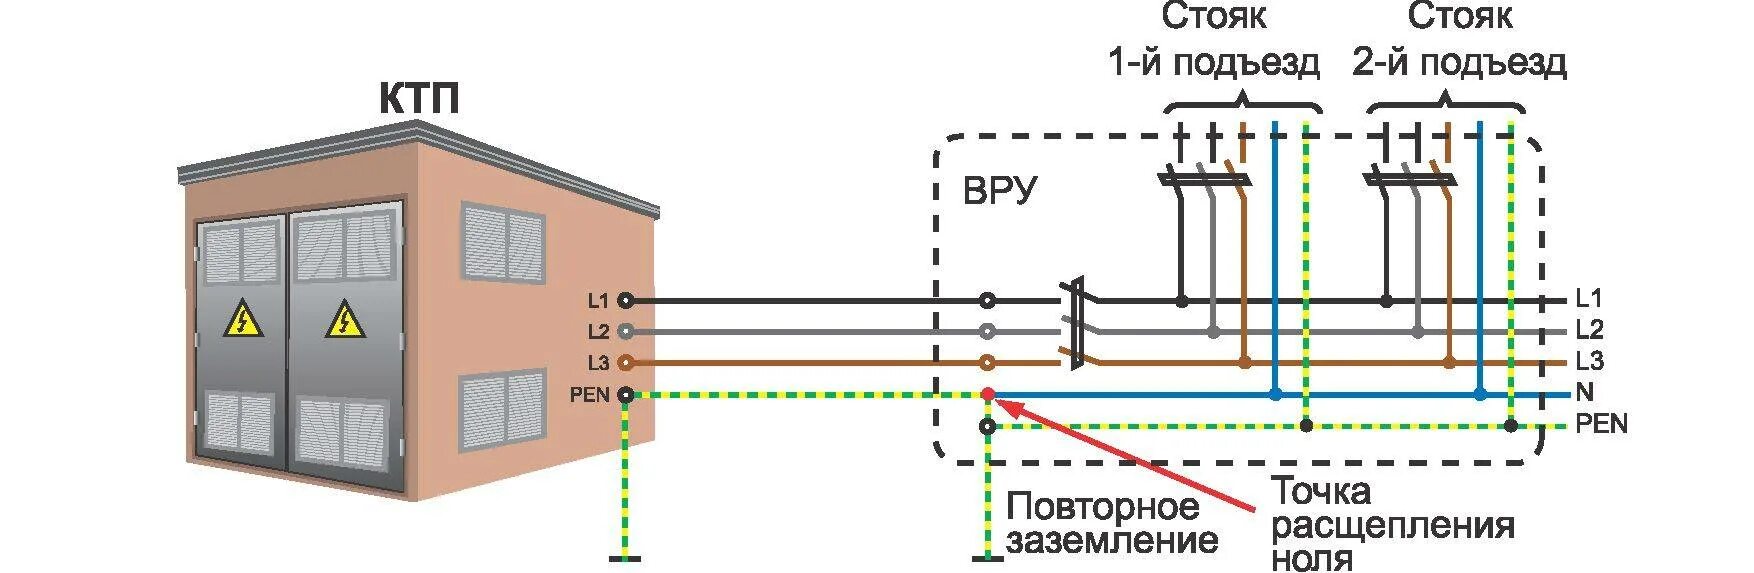 Схема подключения заземления TN-C. Схема системы заземления TN-C. Система заземления в система заземления TN-C-S. Заземление электроустановки схема подключения.